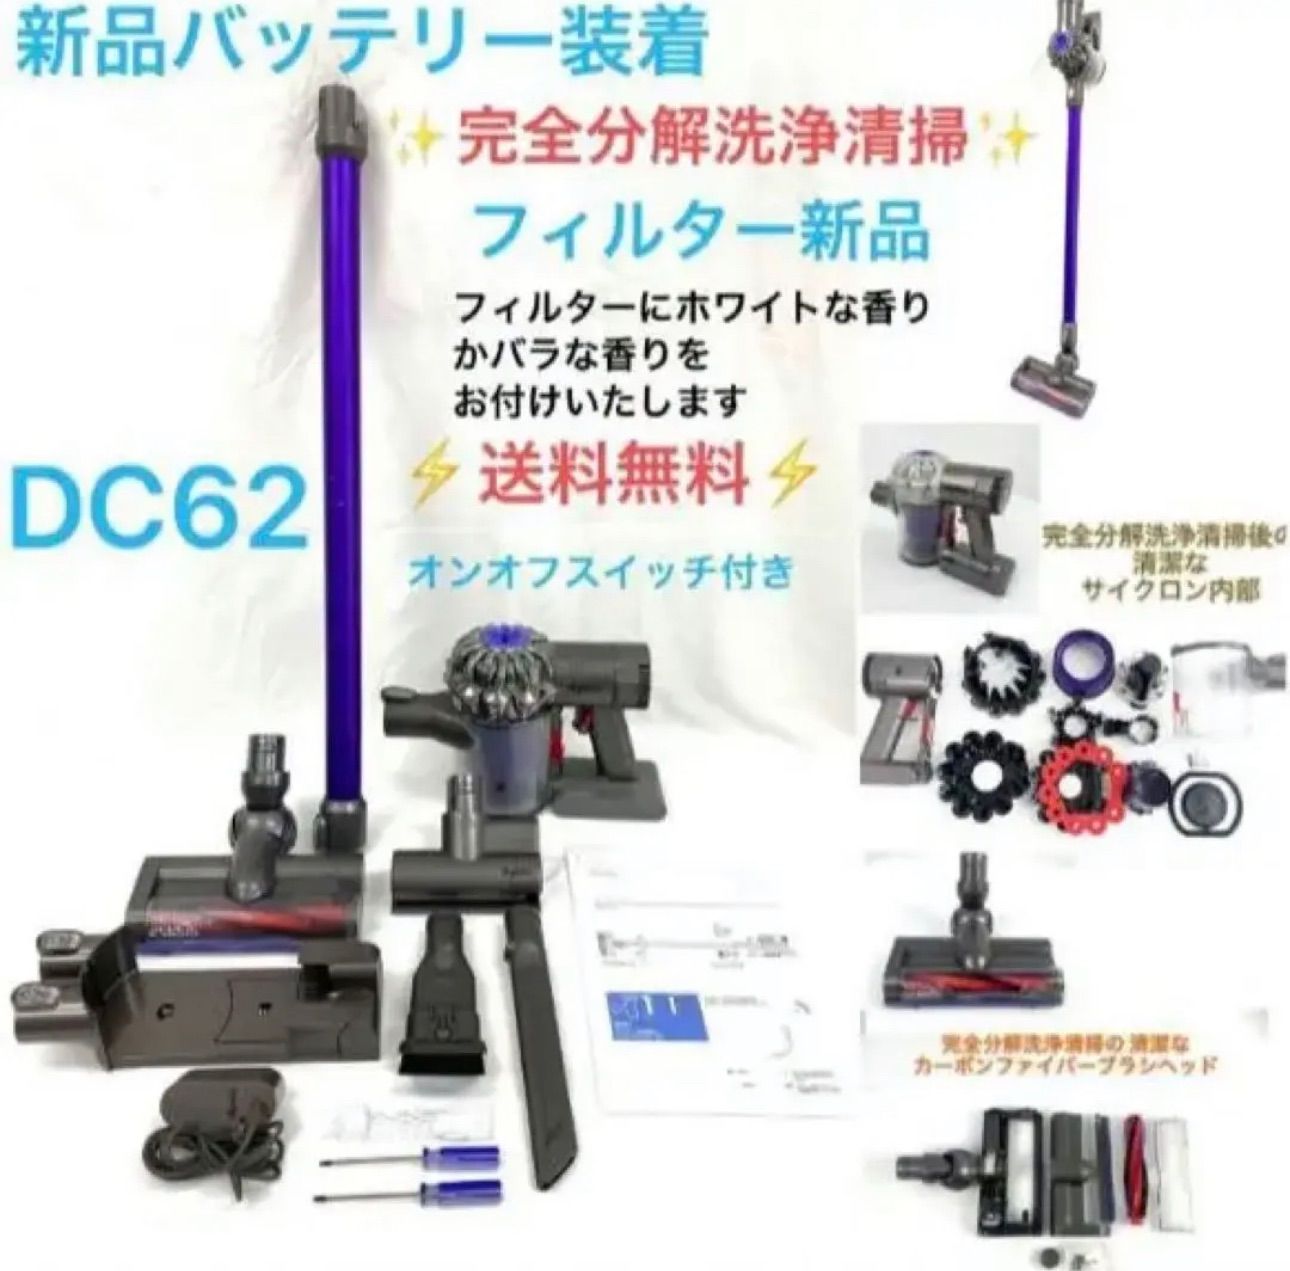 ダイソン 掃除機 DC62 分解掃除済みスマホ/家電/カメラ - mirabellor.com